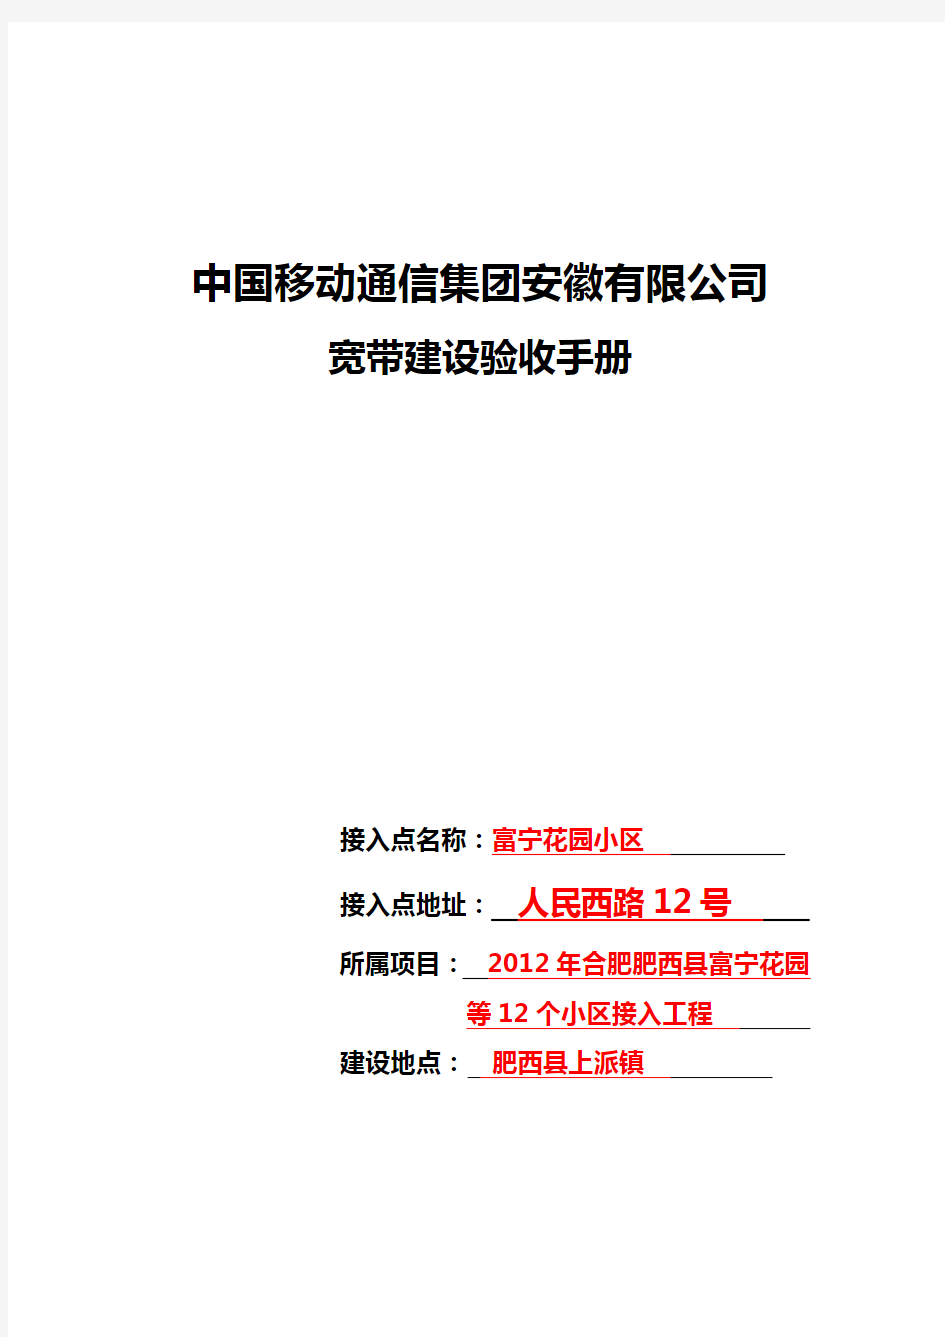 中国移动通信集团安徽有限公司宽带验收手册如何填写模板